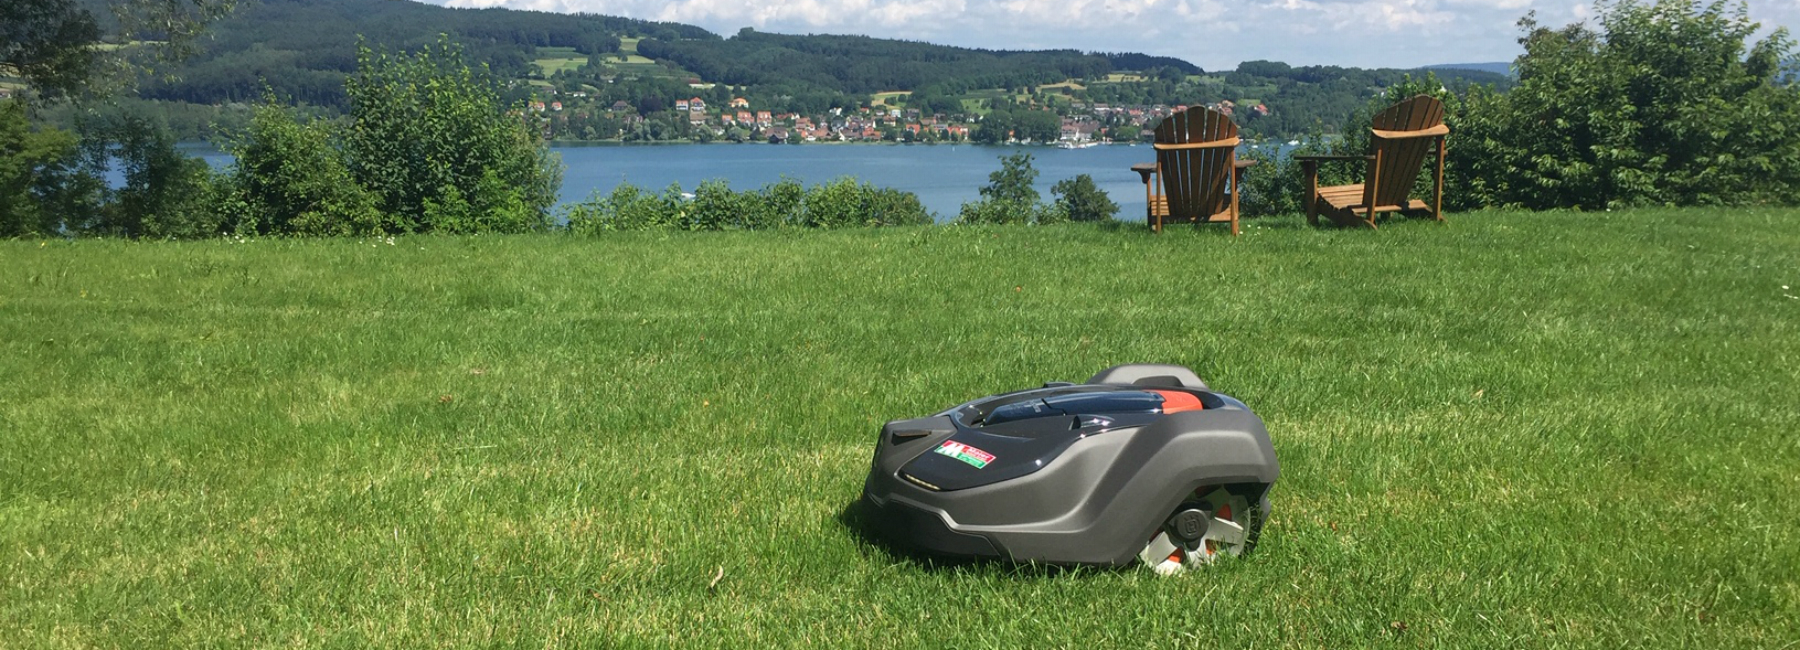 Husqvarna Automower mit Aussicht auf den Bodensee